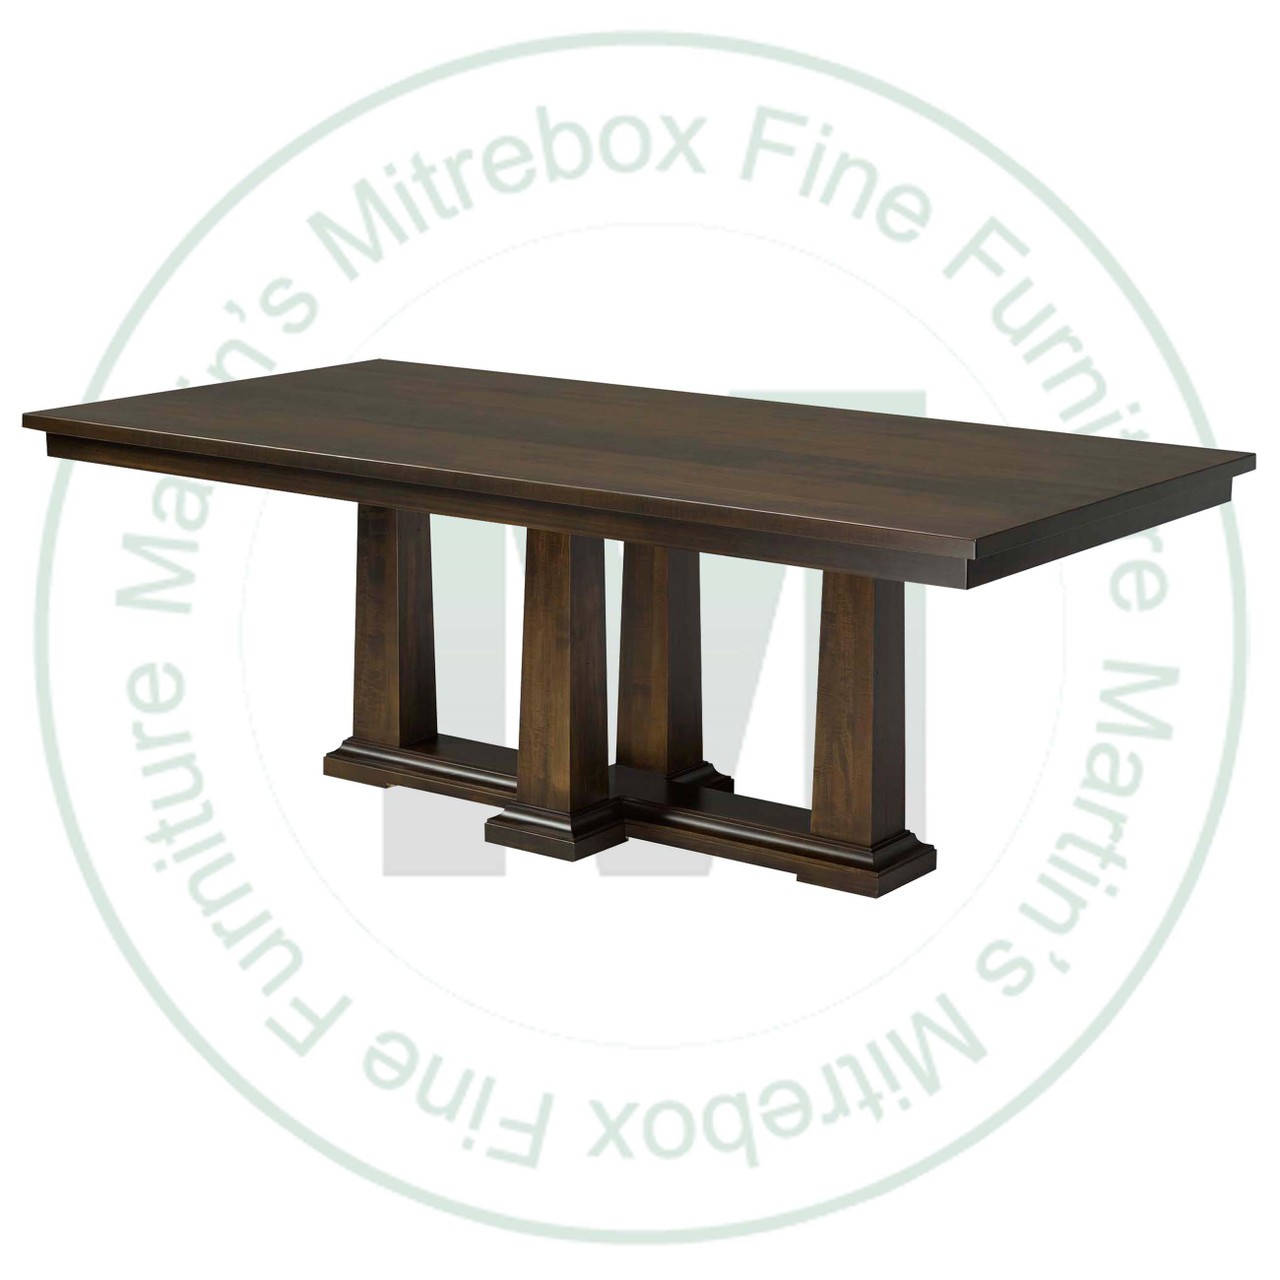 Oak Parthenon Double Pedestal Table 48''D x 72''W x 30''H And 2 - 16'' Extensions